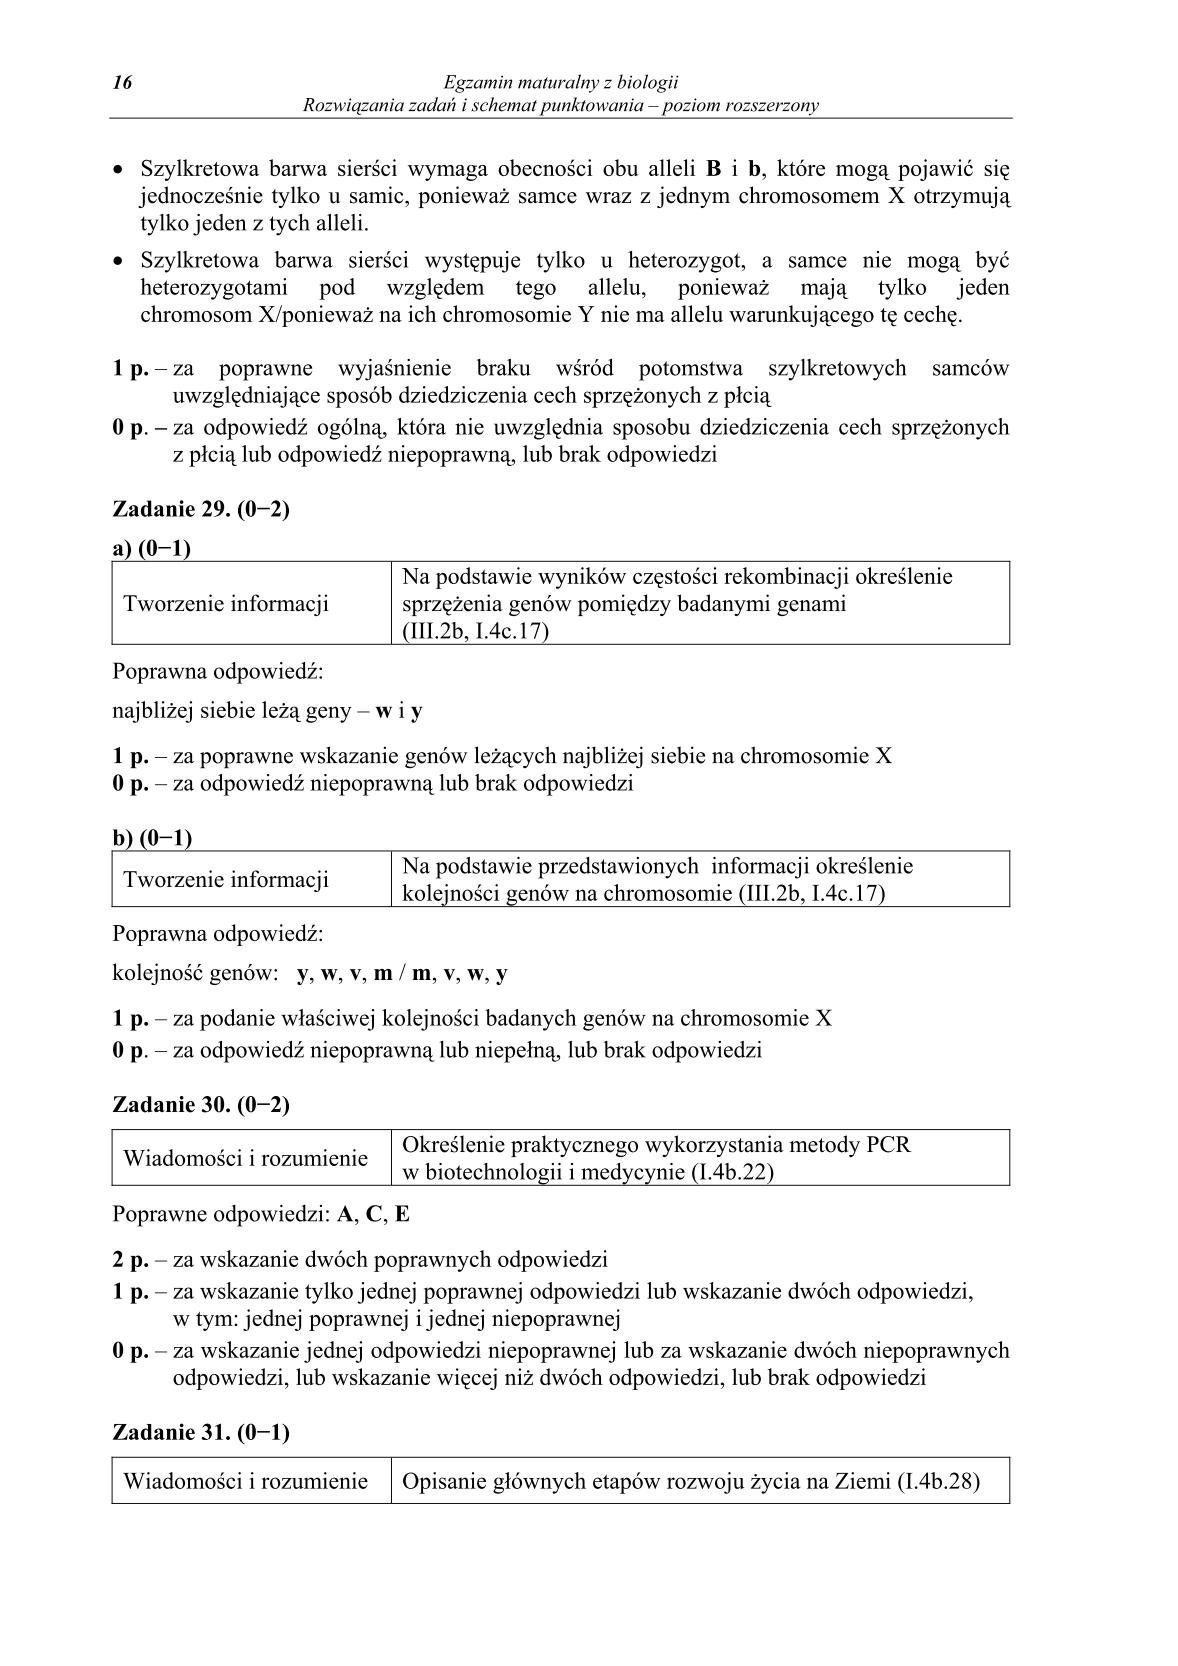 odpowiedzi-biologia-poziom-rozszerzony-matura-2014-str.16